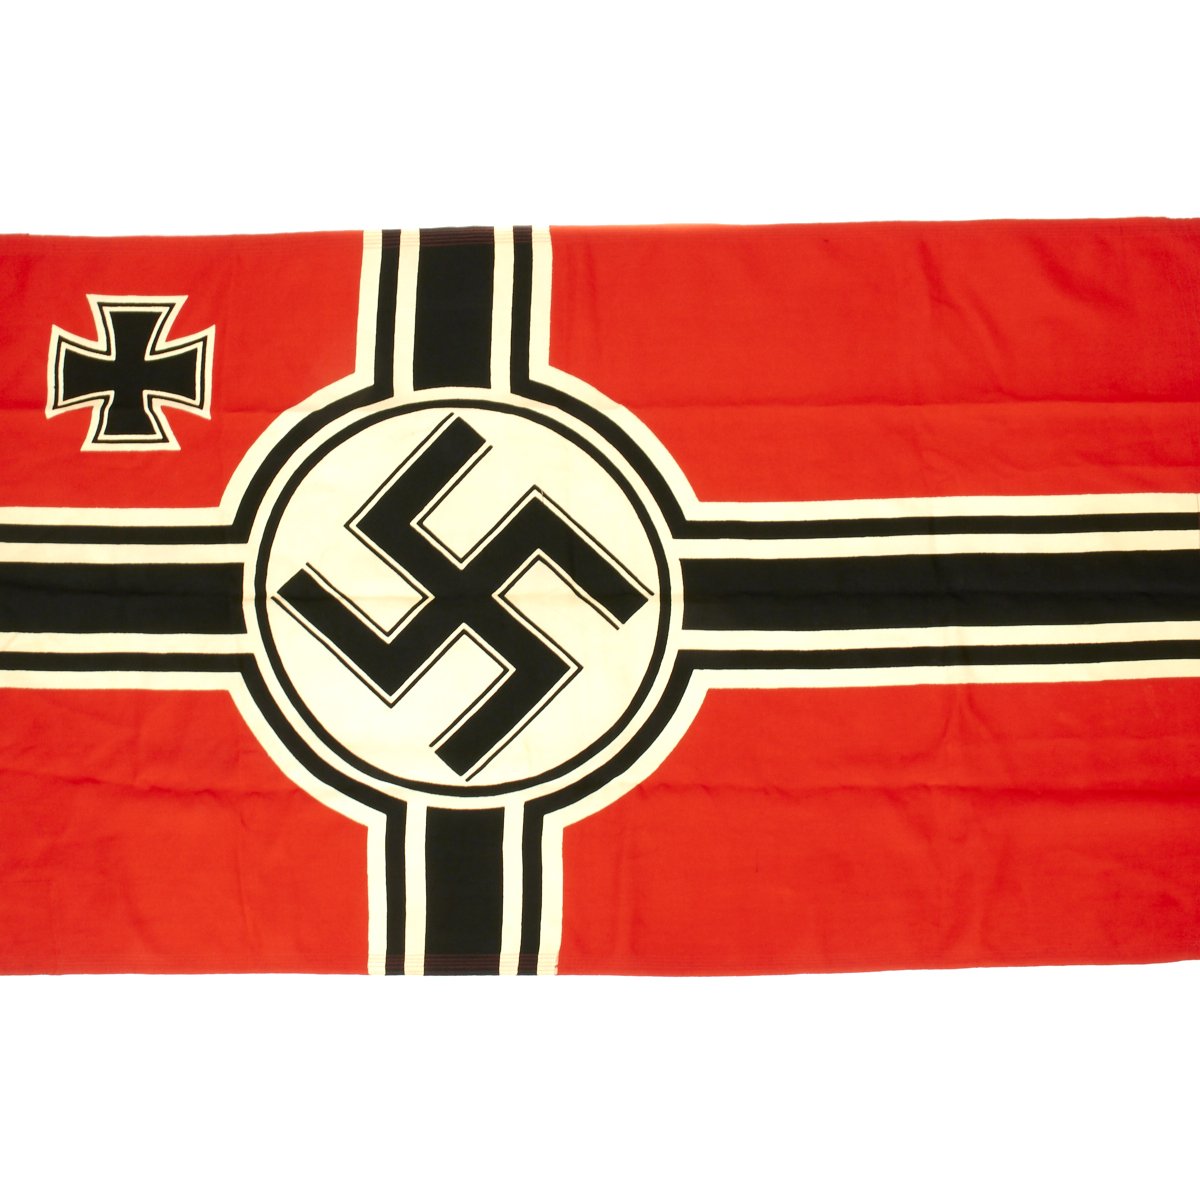 Немецкий флаг во время войны фото